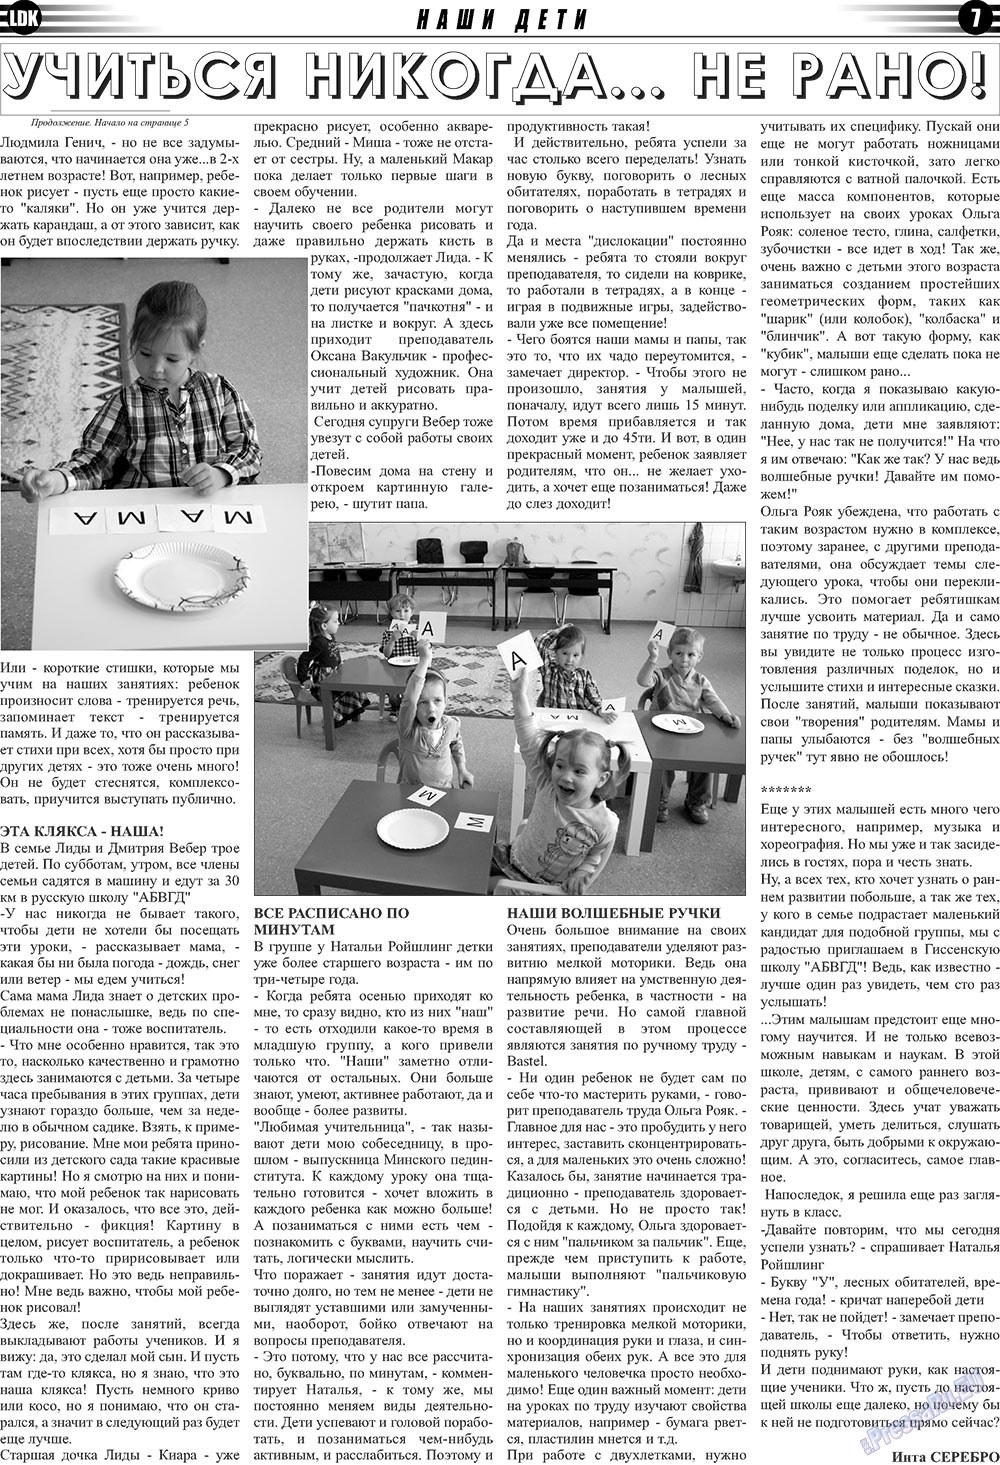 LDK по-русски (газета). 2011 год, номер 3, стр. 7